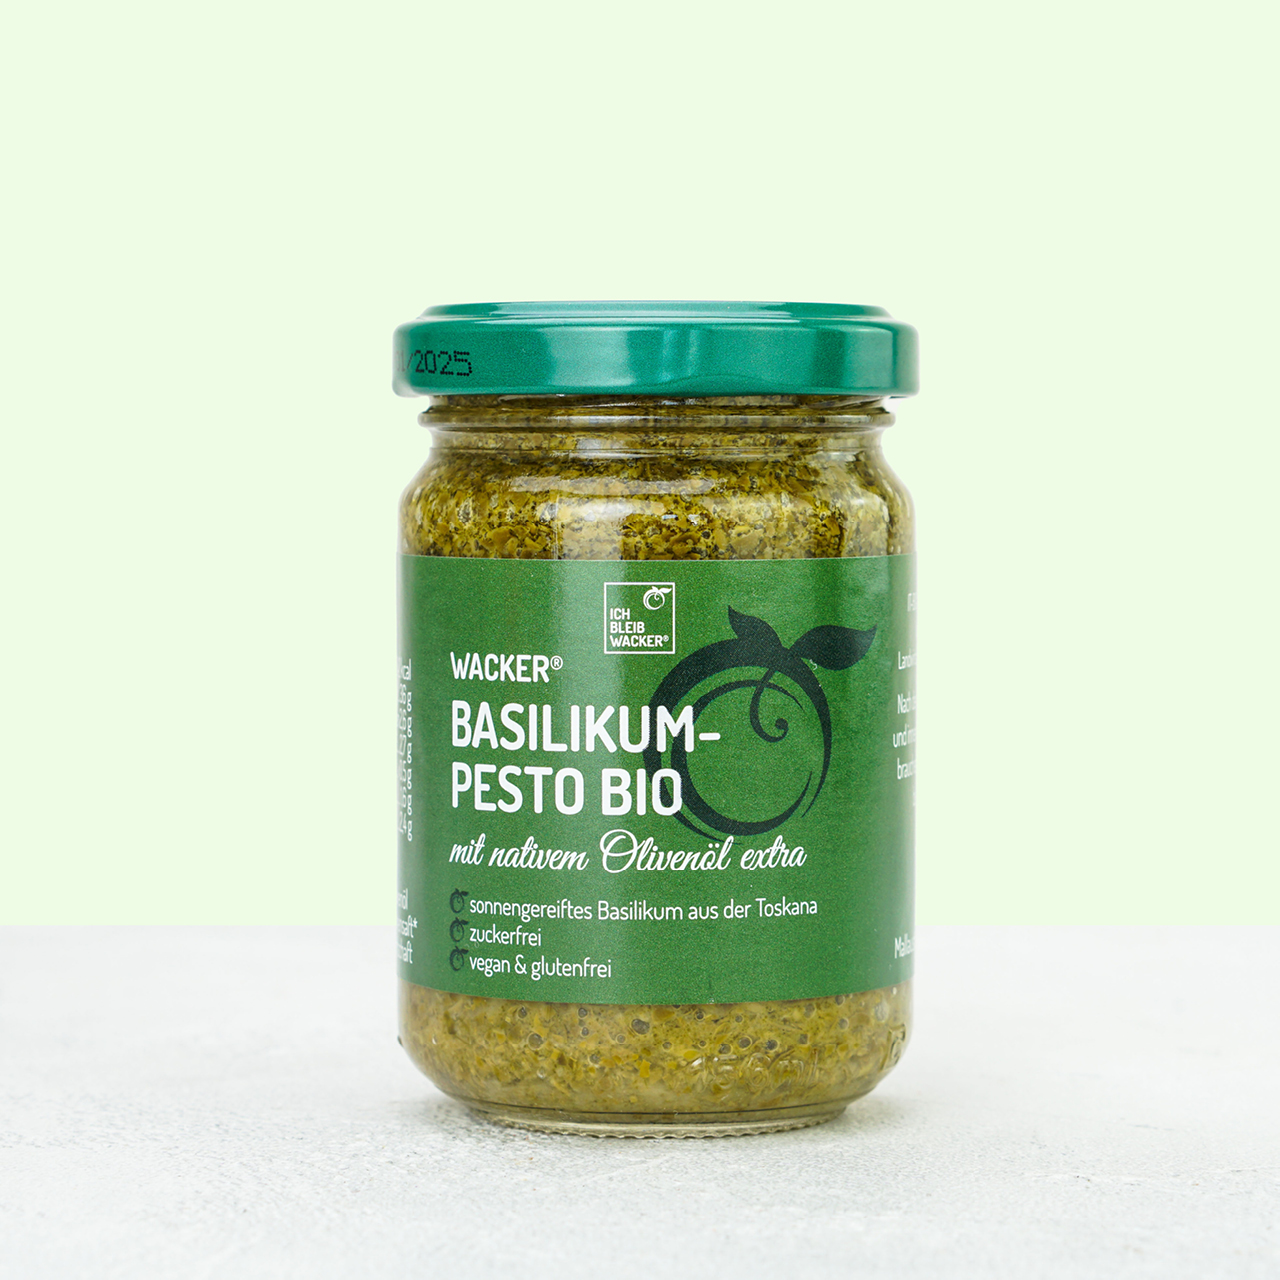 Wacker Basilikum-Pesto Bio, 130g